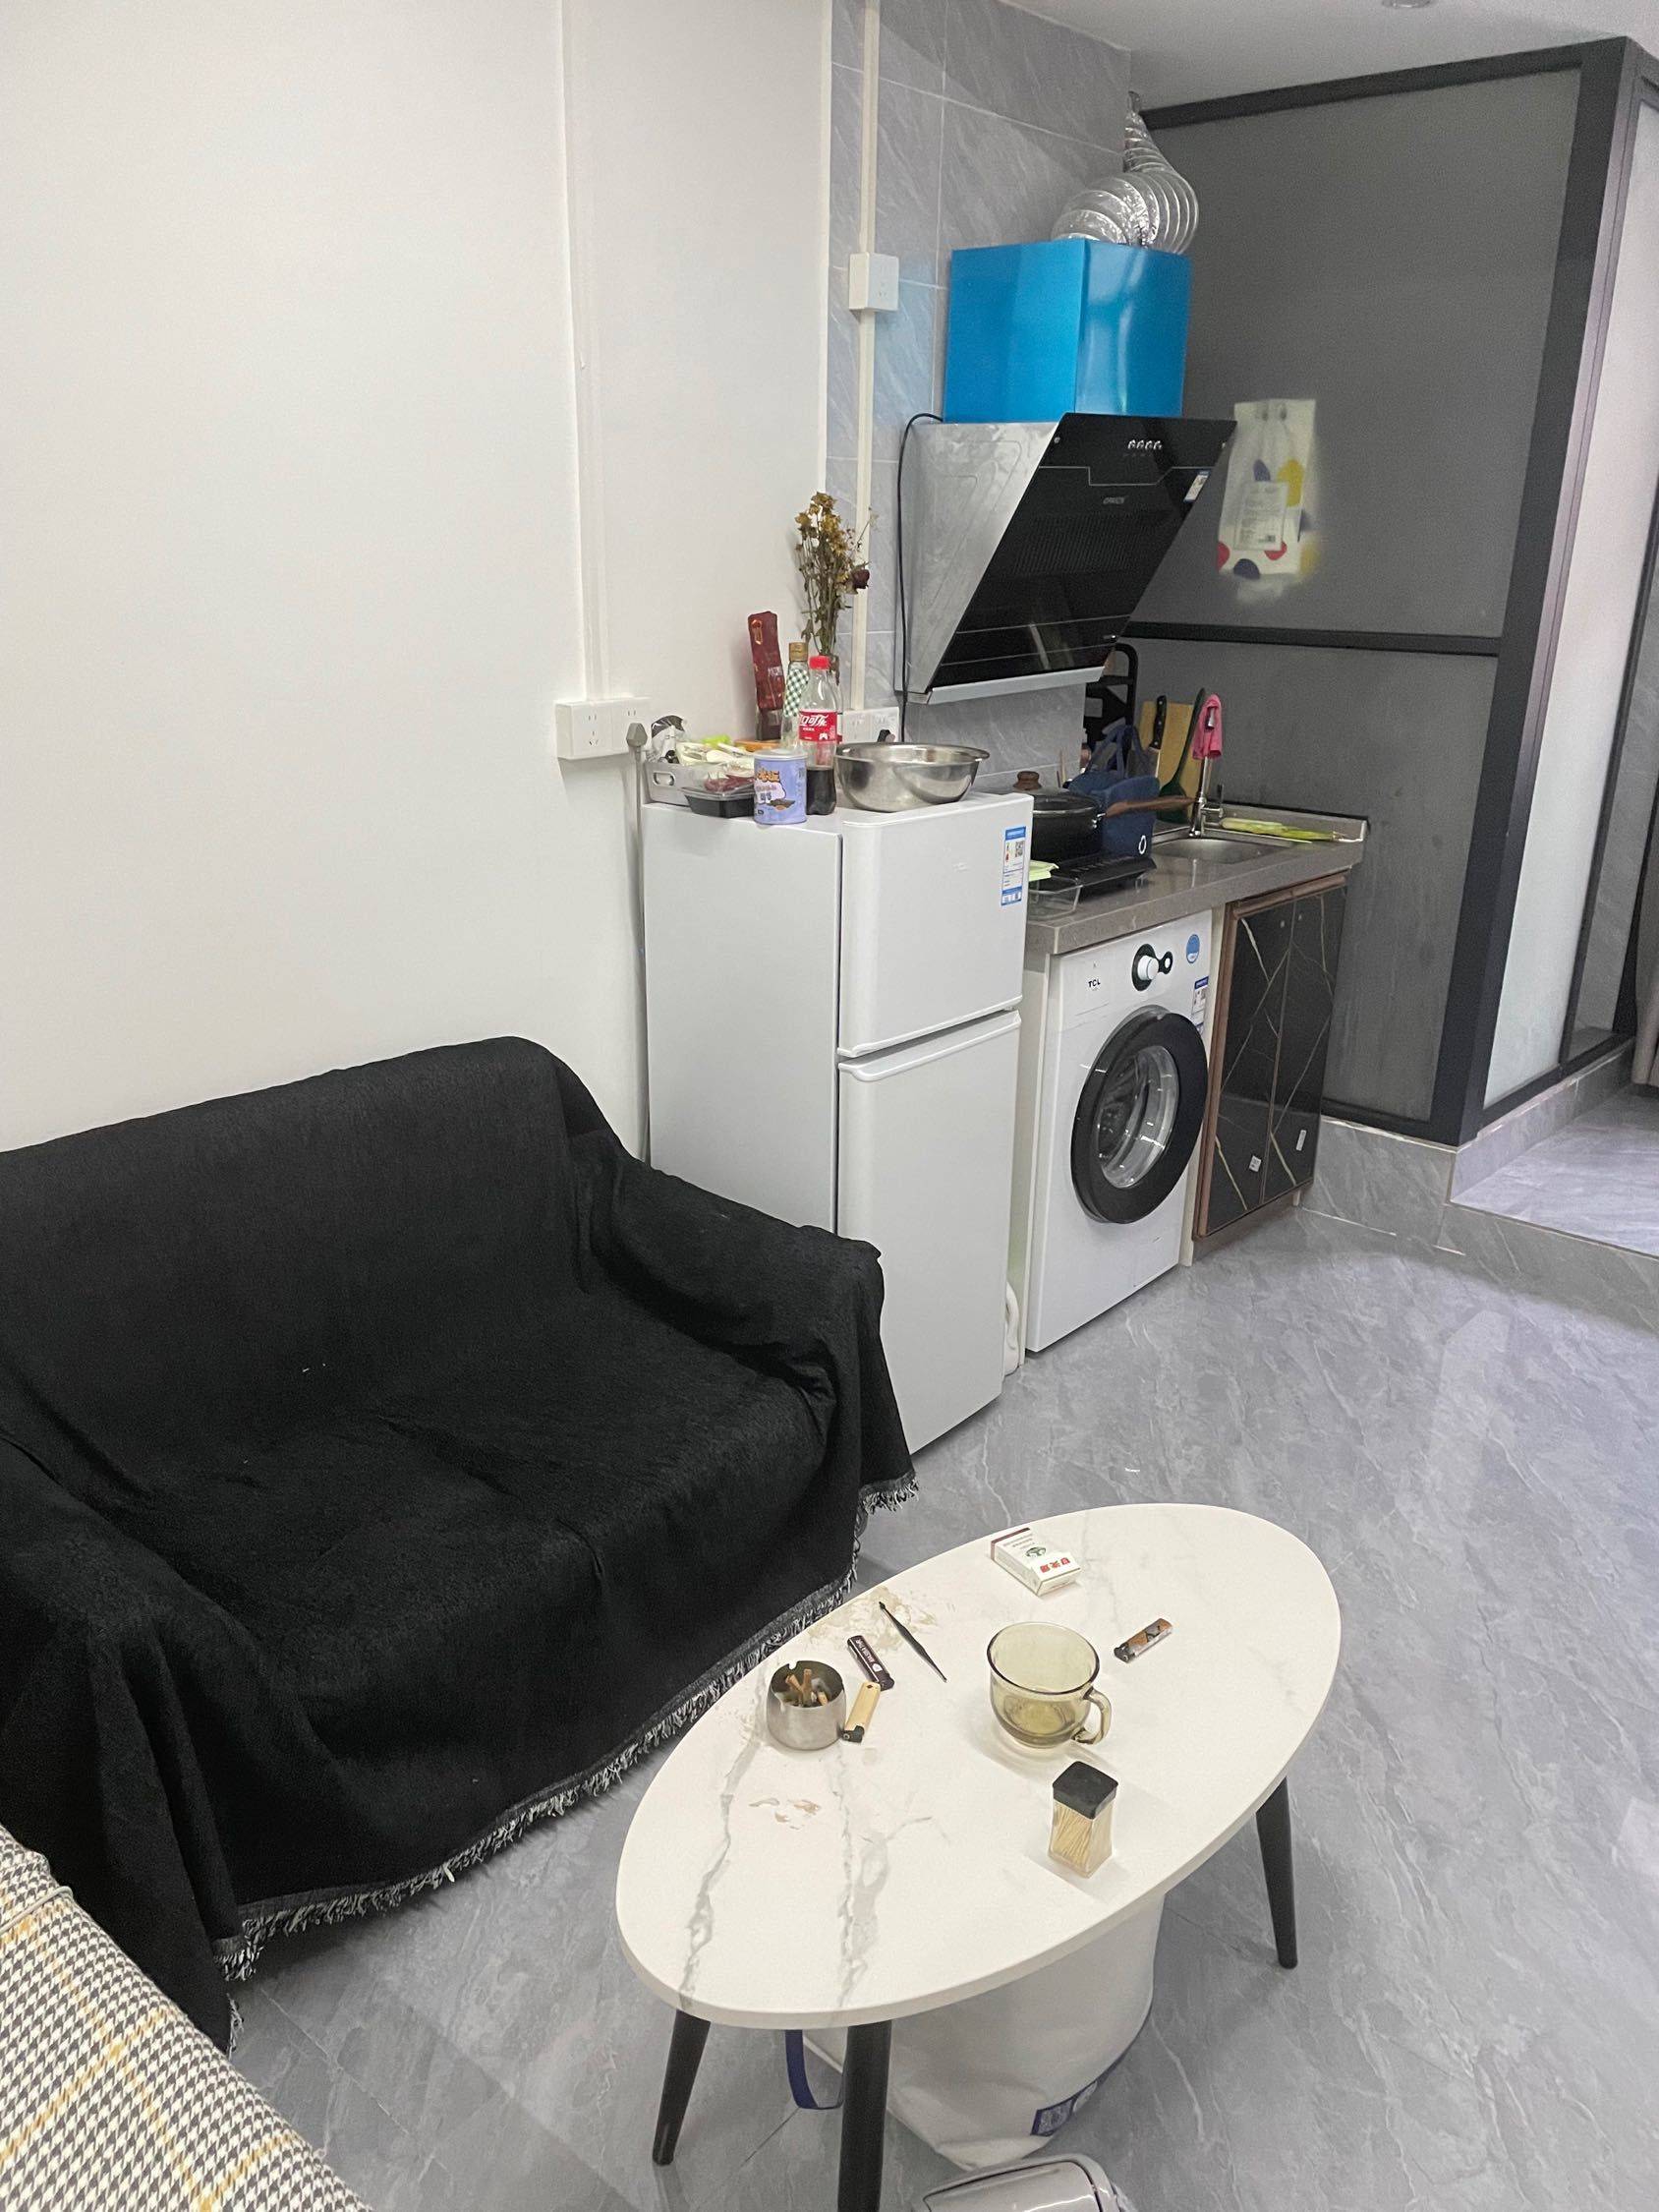 Guangzhou-Haizhu-Cozy Home,Clean&Comfy,No Gender Limit